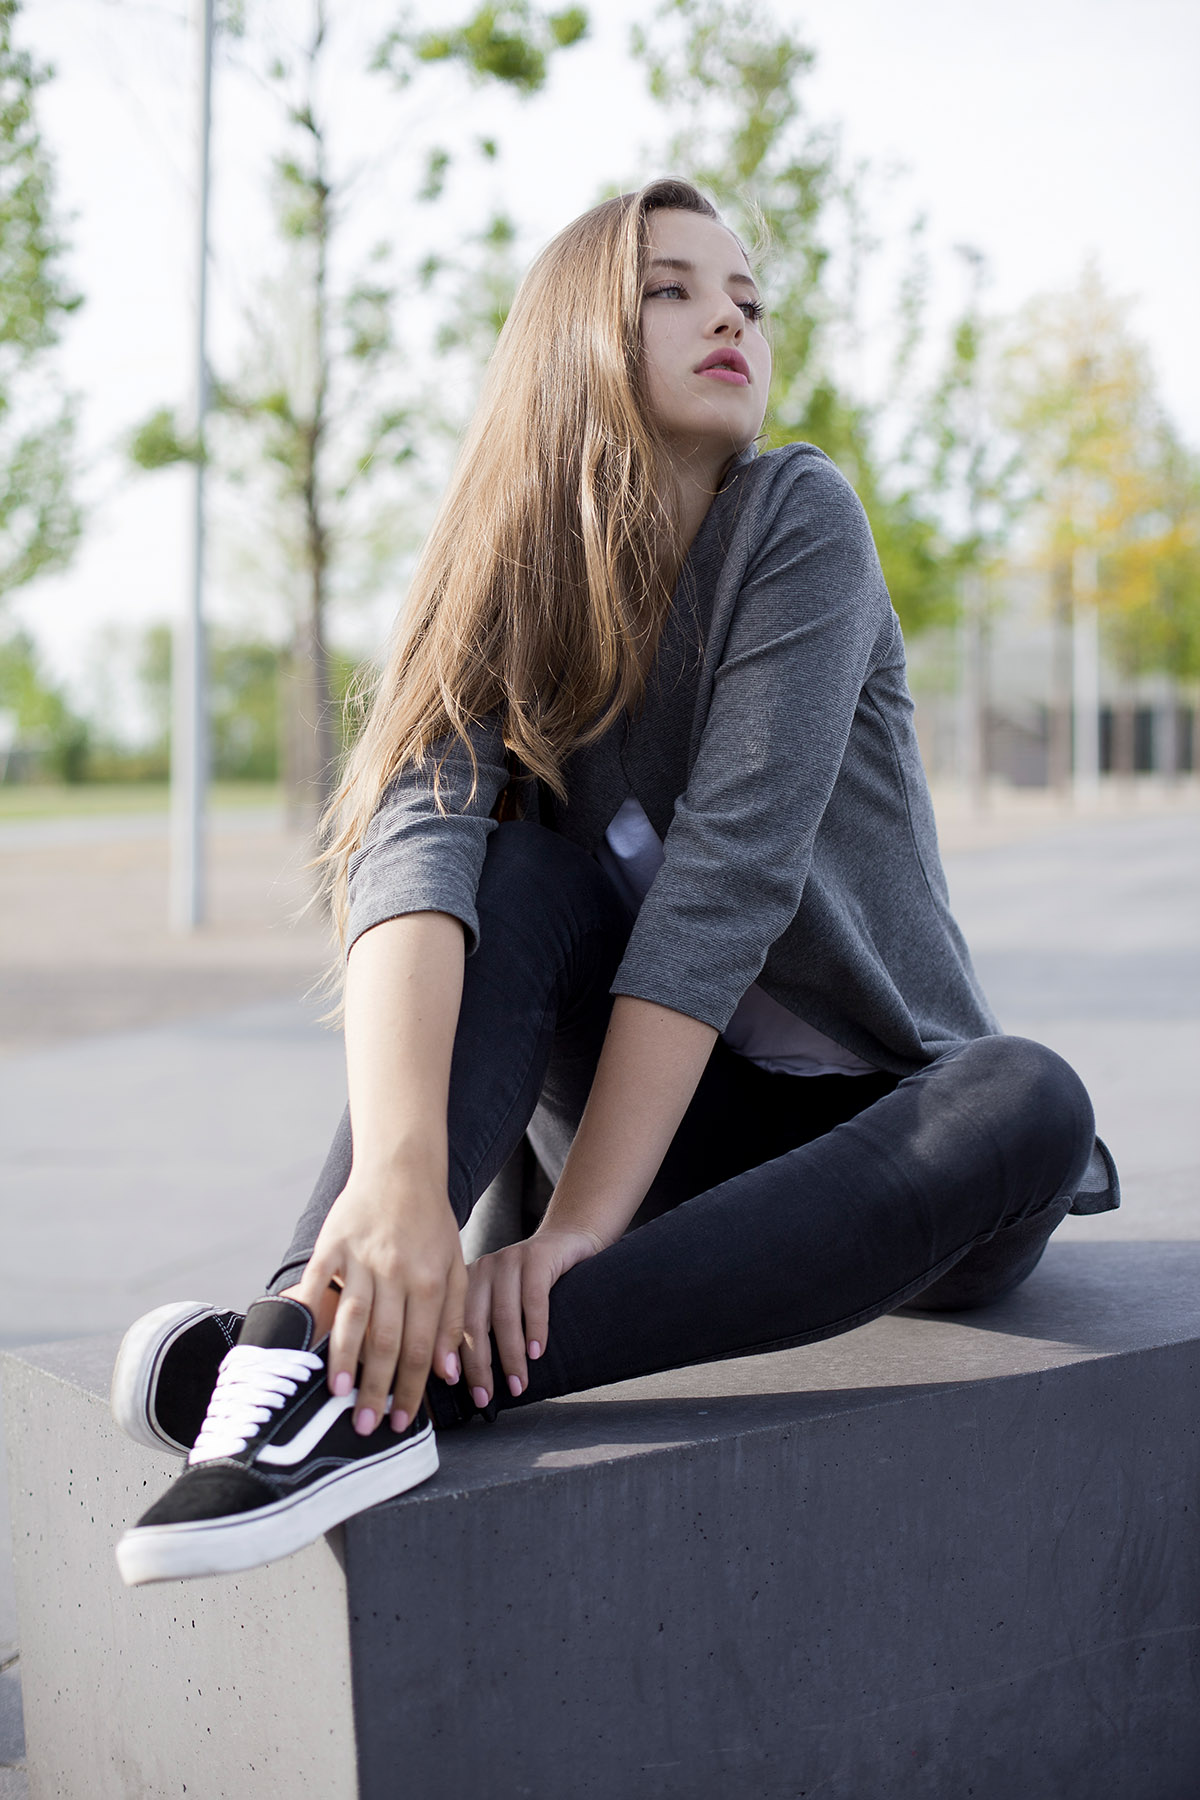 Outdoorfotografie weibliche Person im Aussenbereich, graues Oberteil schwarze Jeans und Vans Schuhe